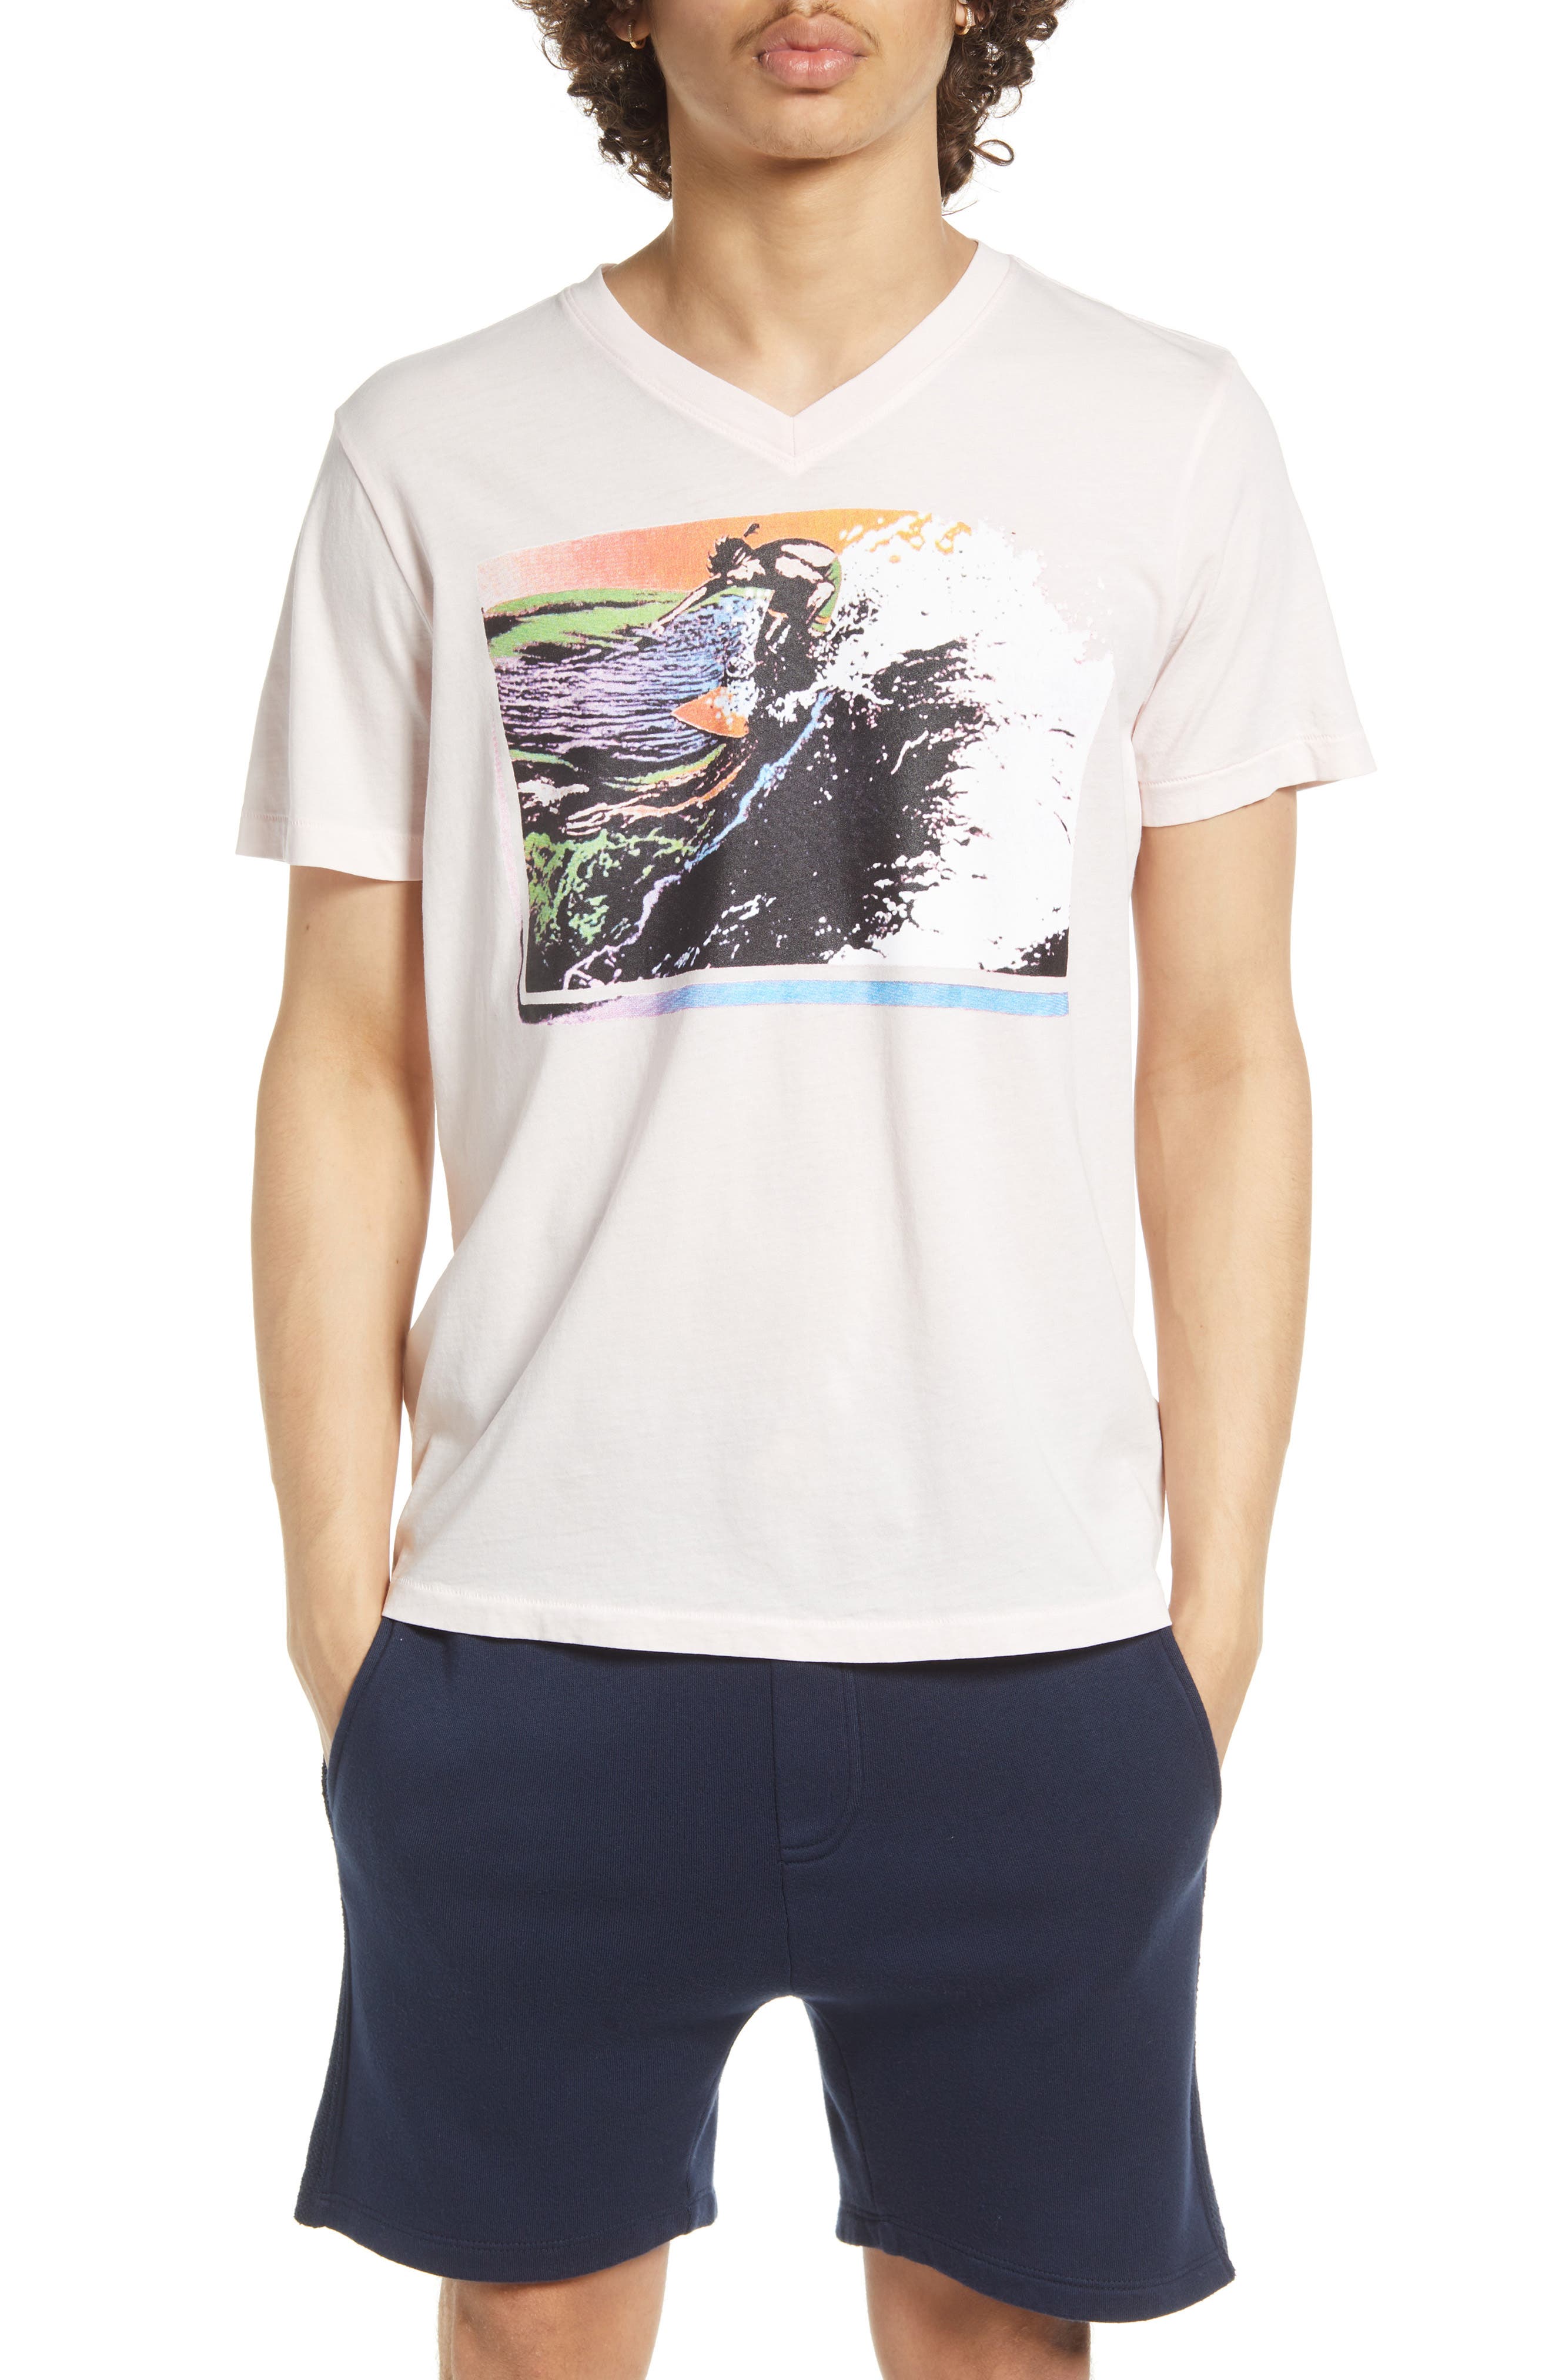 bold print Stylish unique Men's  V-Neck graphic vintage style T shirt